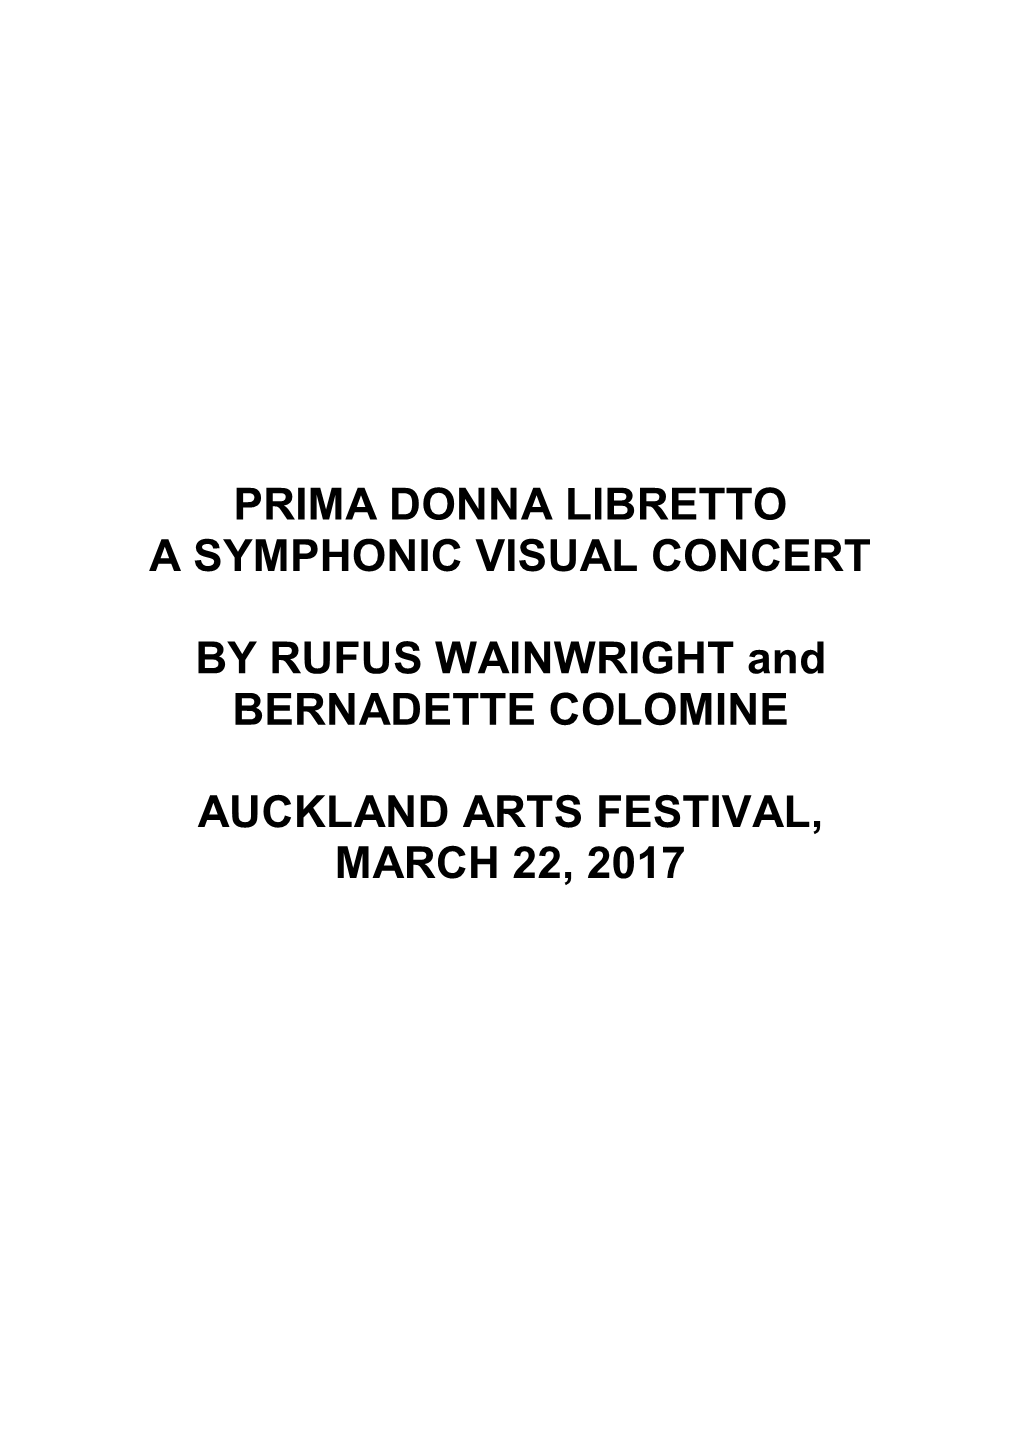 Download the Prima Donna Libretto